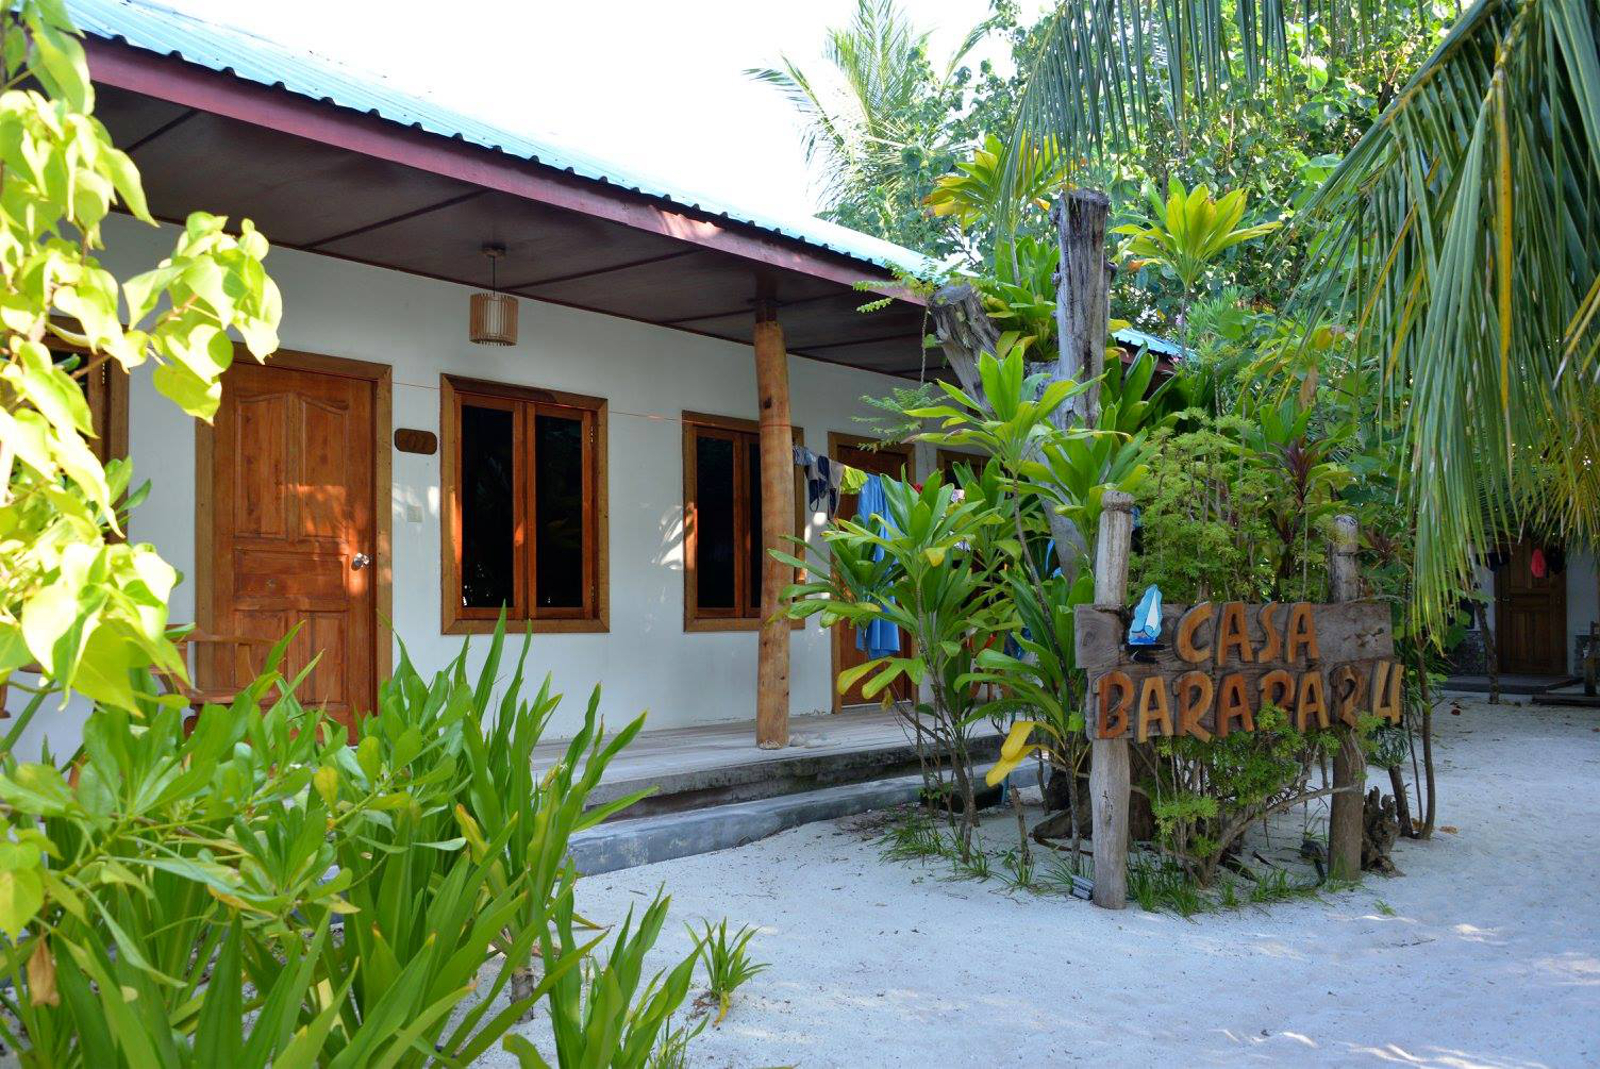 Casa Barabaru casa-barabaru-maldive-2.jpg